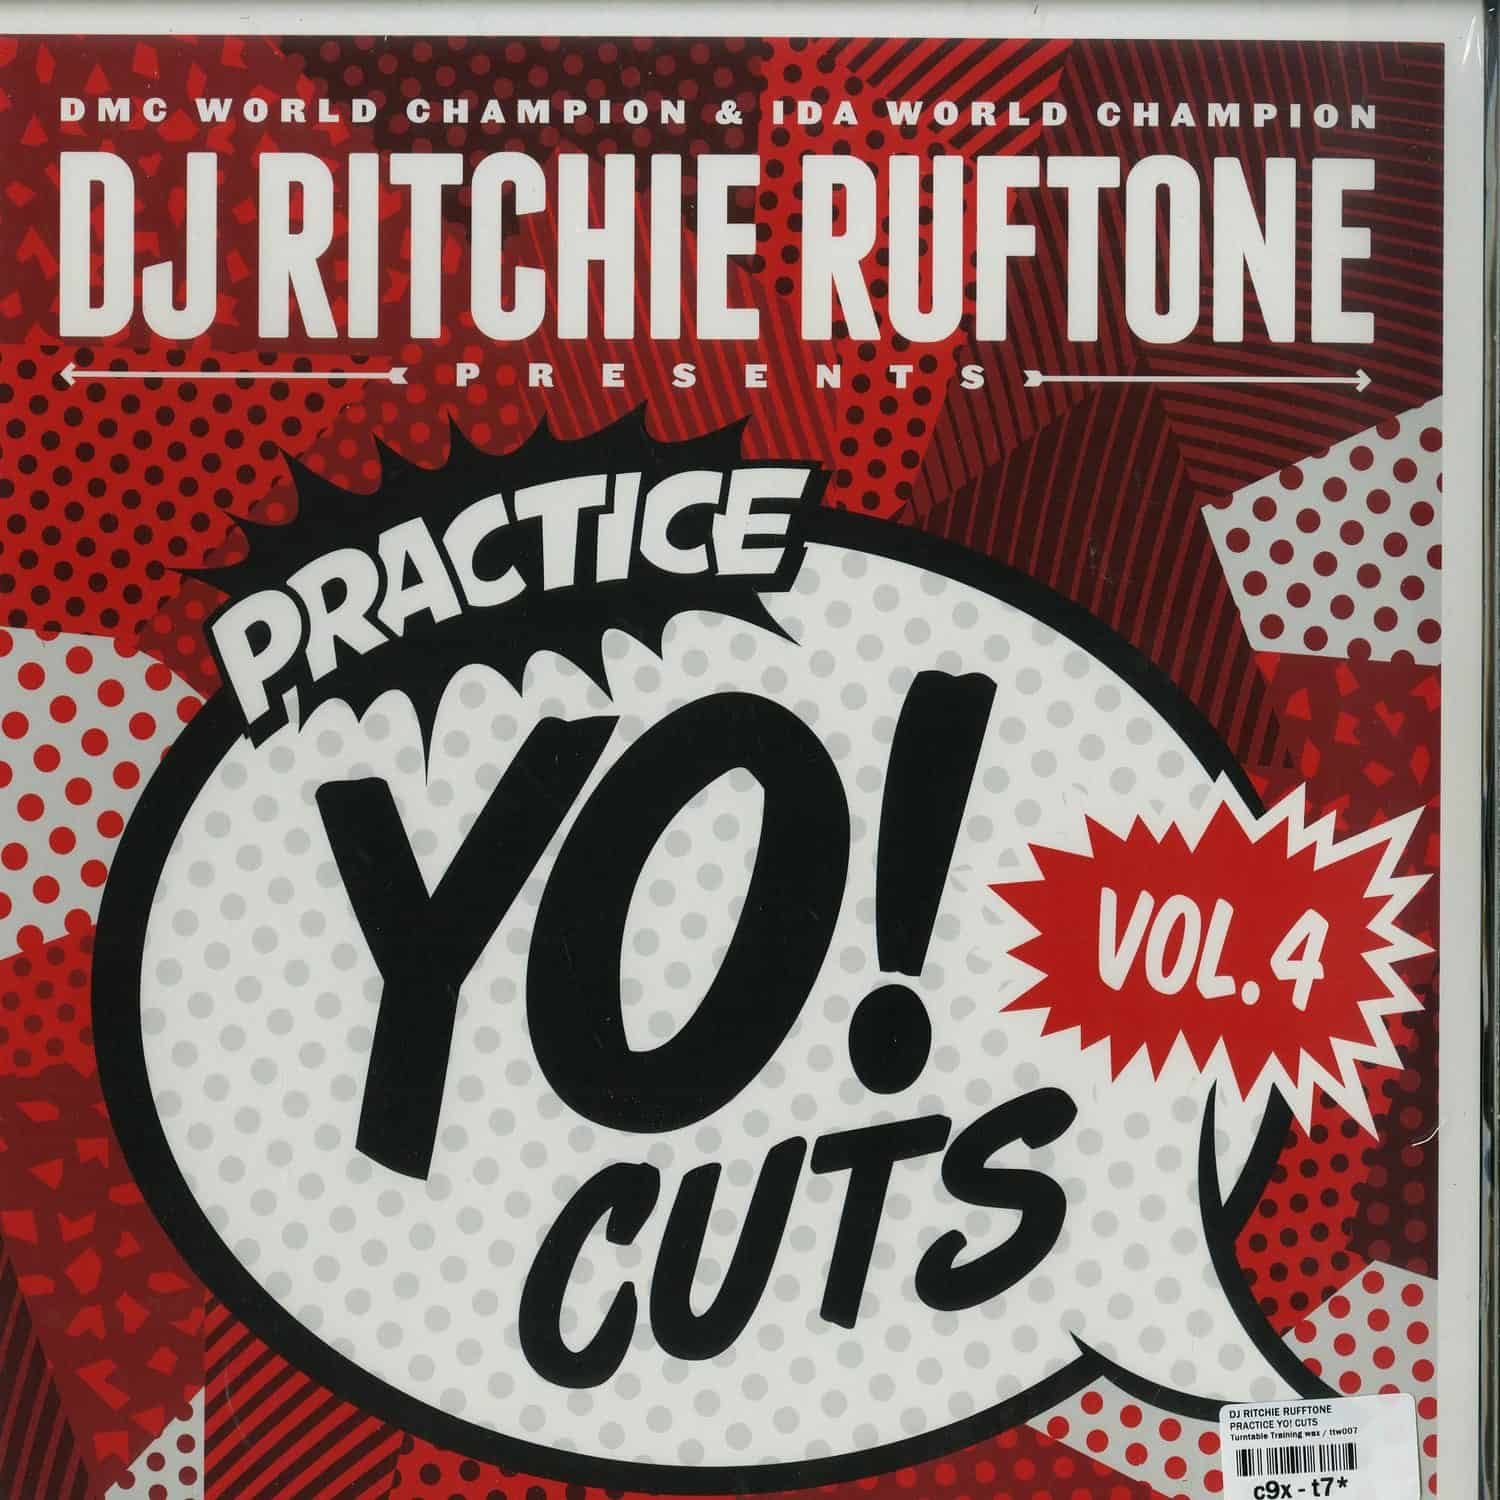 DJ Ritchie Rufftone - PRACTICE YO! CUTS VOL. 4 